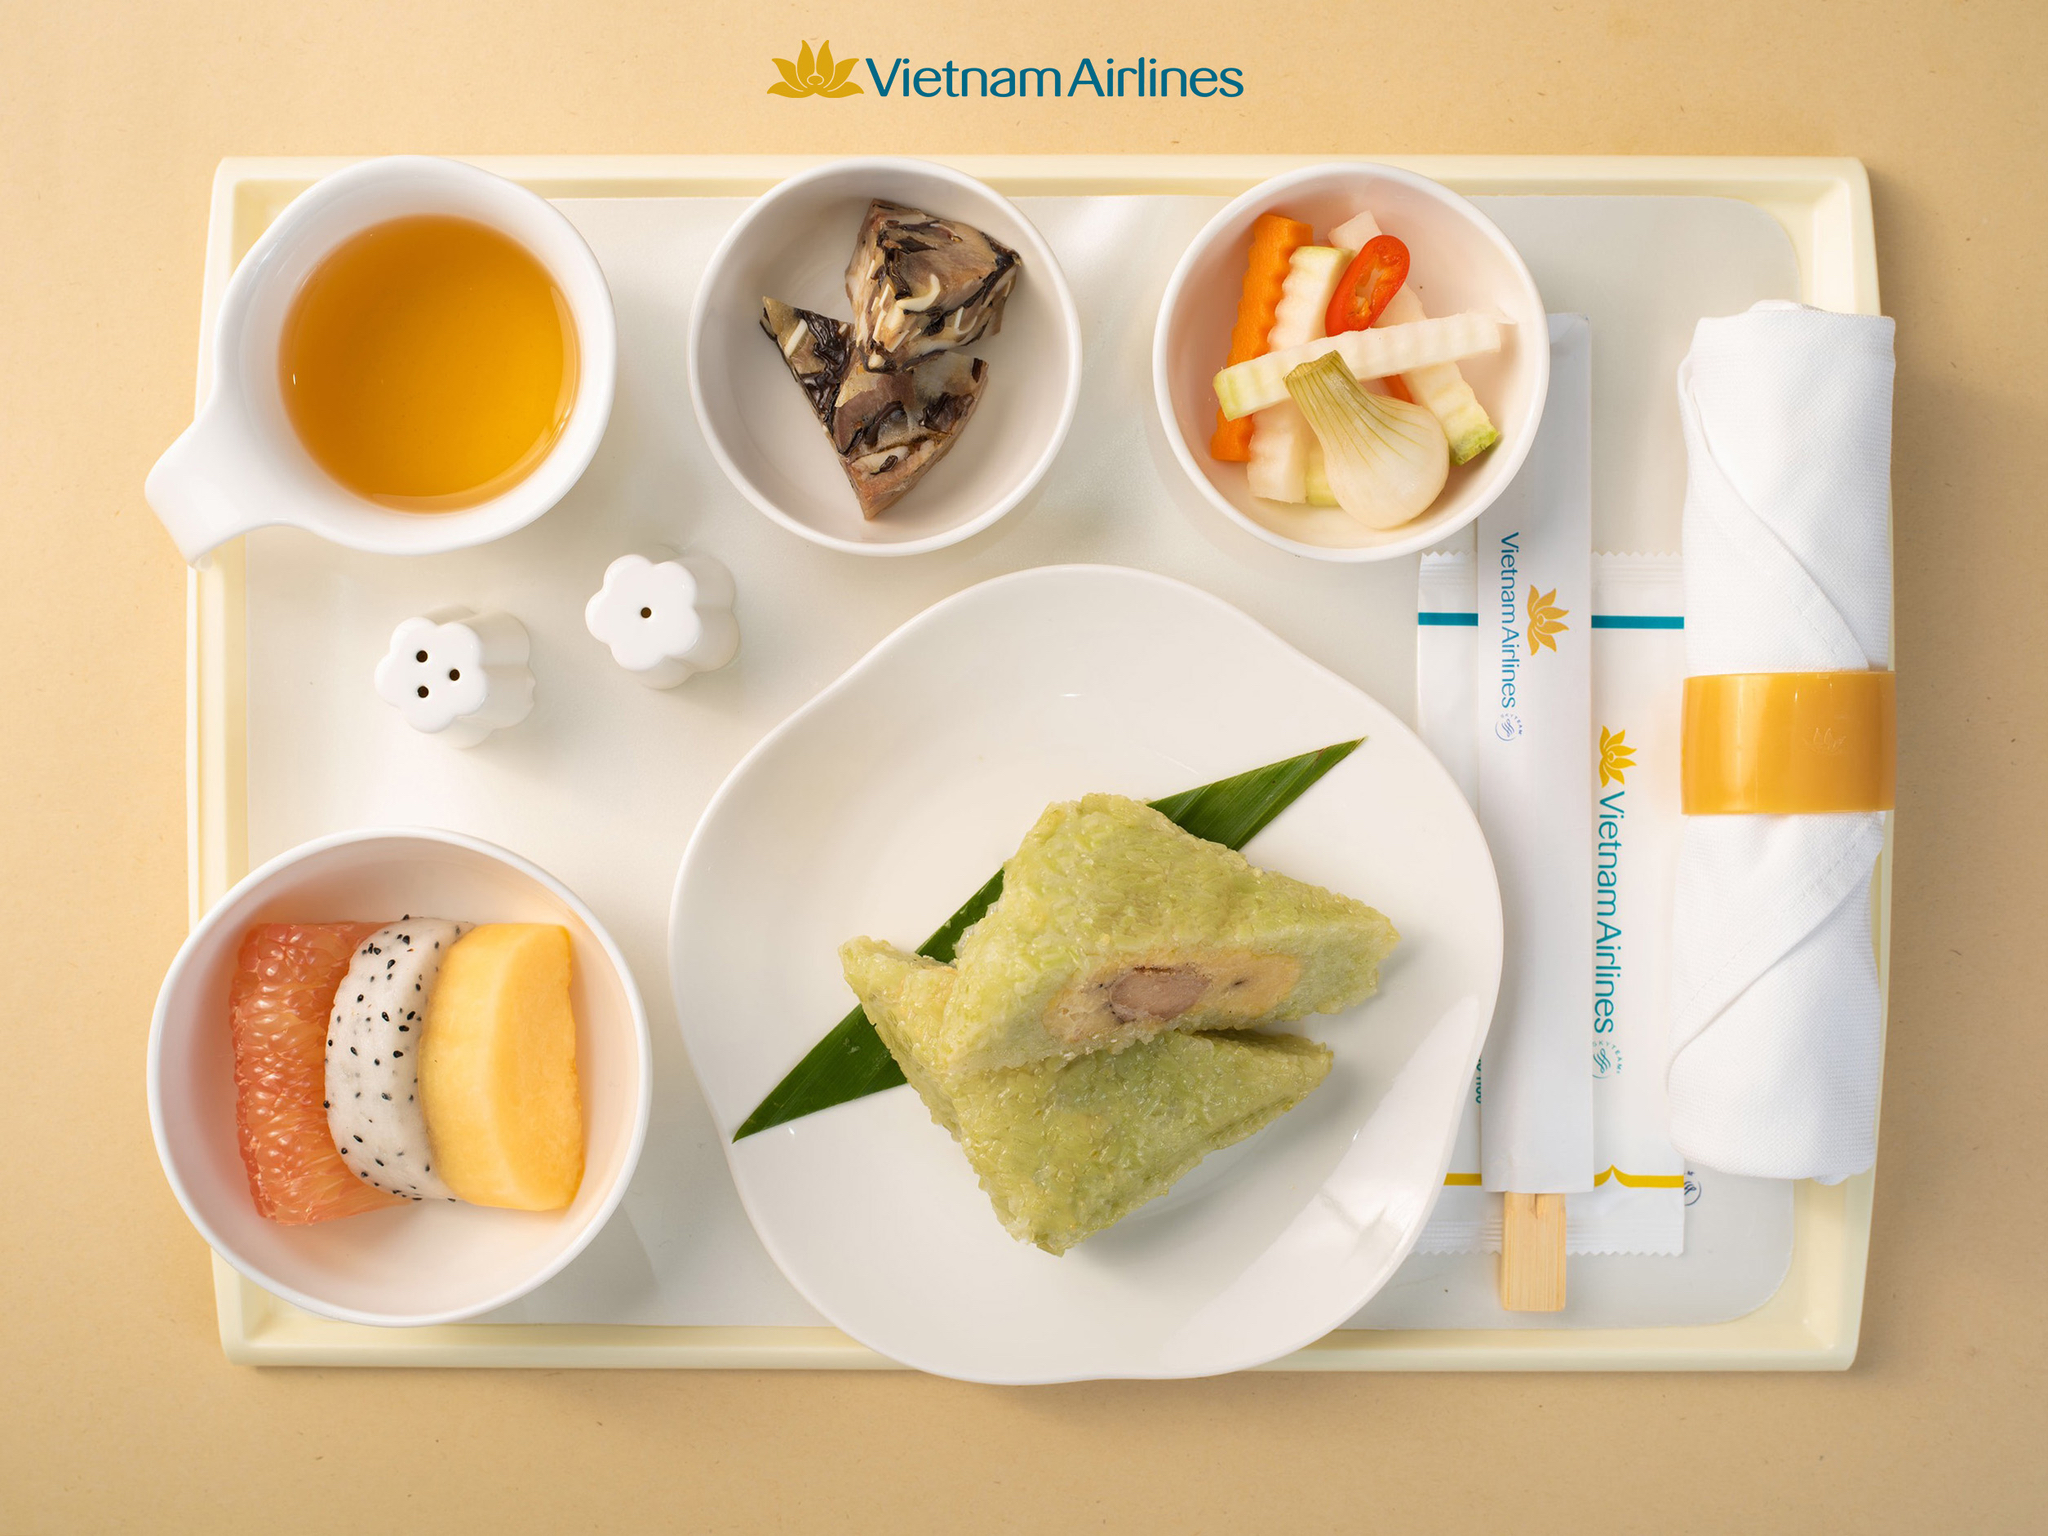 Tết 2021 này, Vietnam Airlines phục vụ món ăn đặc trưng ngày Tết trên các chuyến bay nội địa